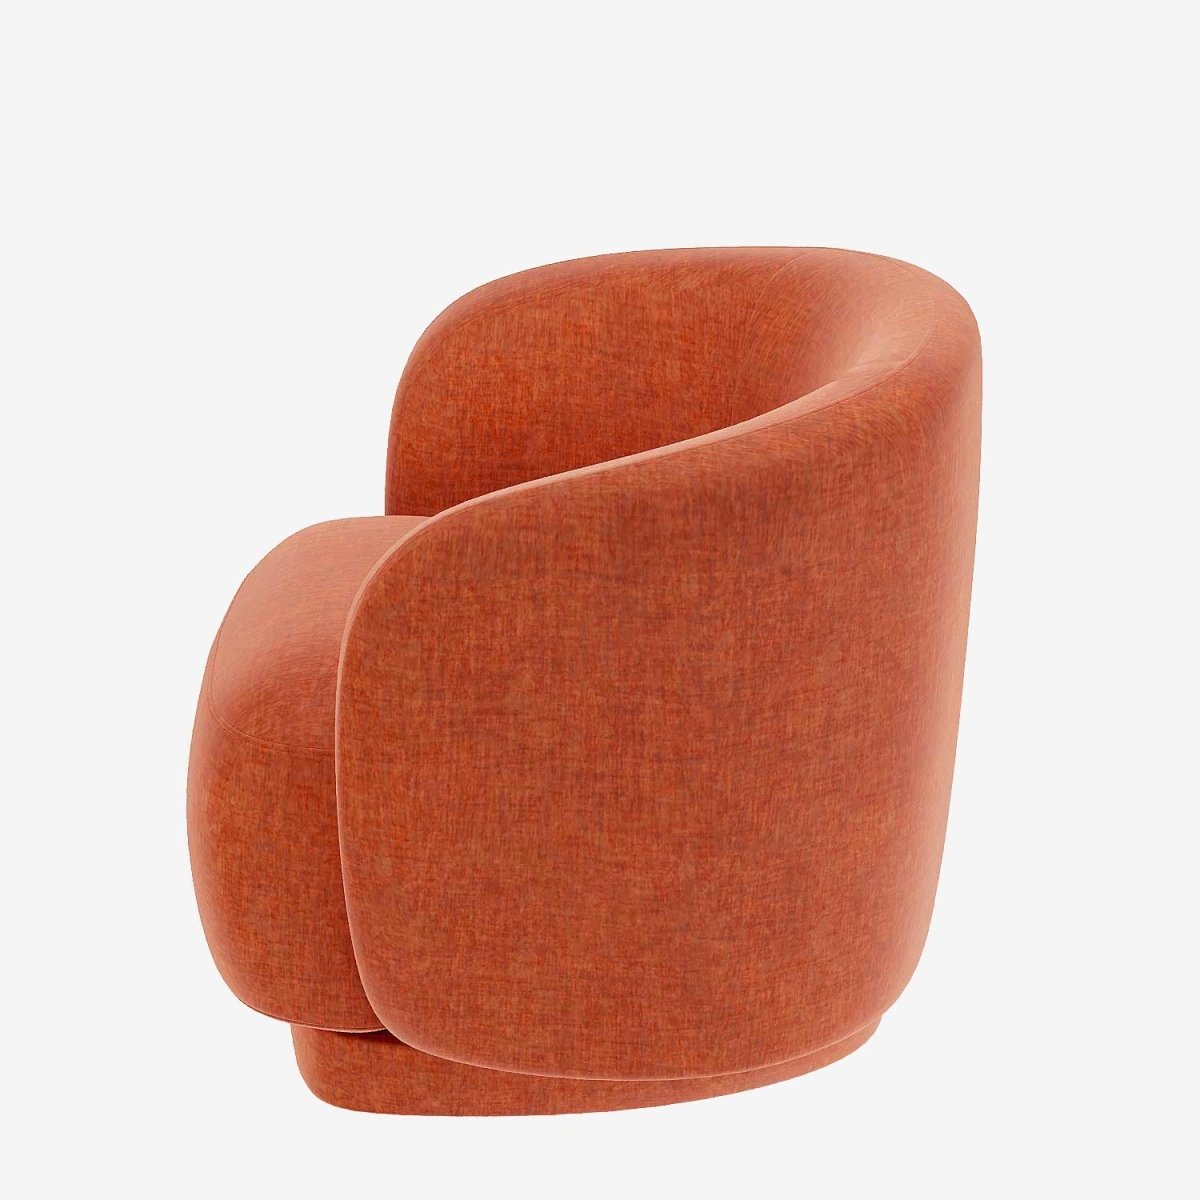 Fauteuil vintage seventies en velours orange corail - Potiron Paris, la satisfaction du fauteuil design et confortable pas cher